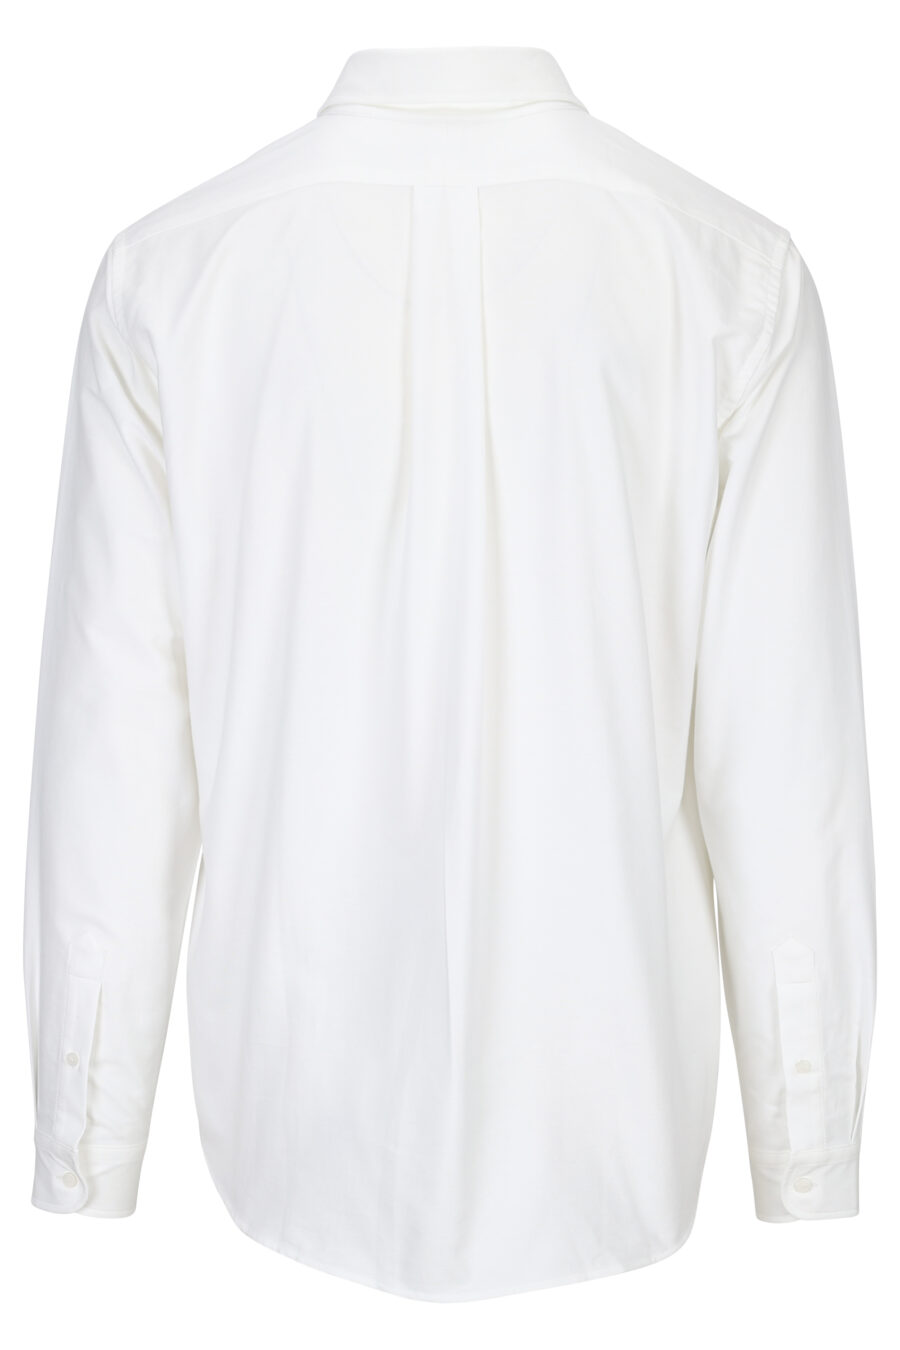 Weißes Hemd mit Mini-Logo "boke flower" - 3612230543140 12